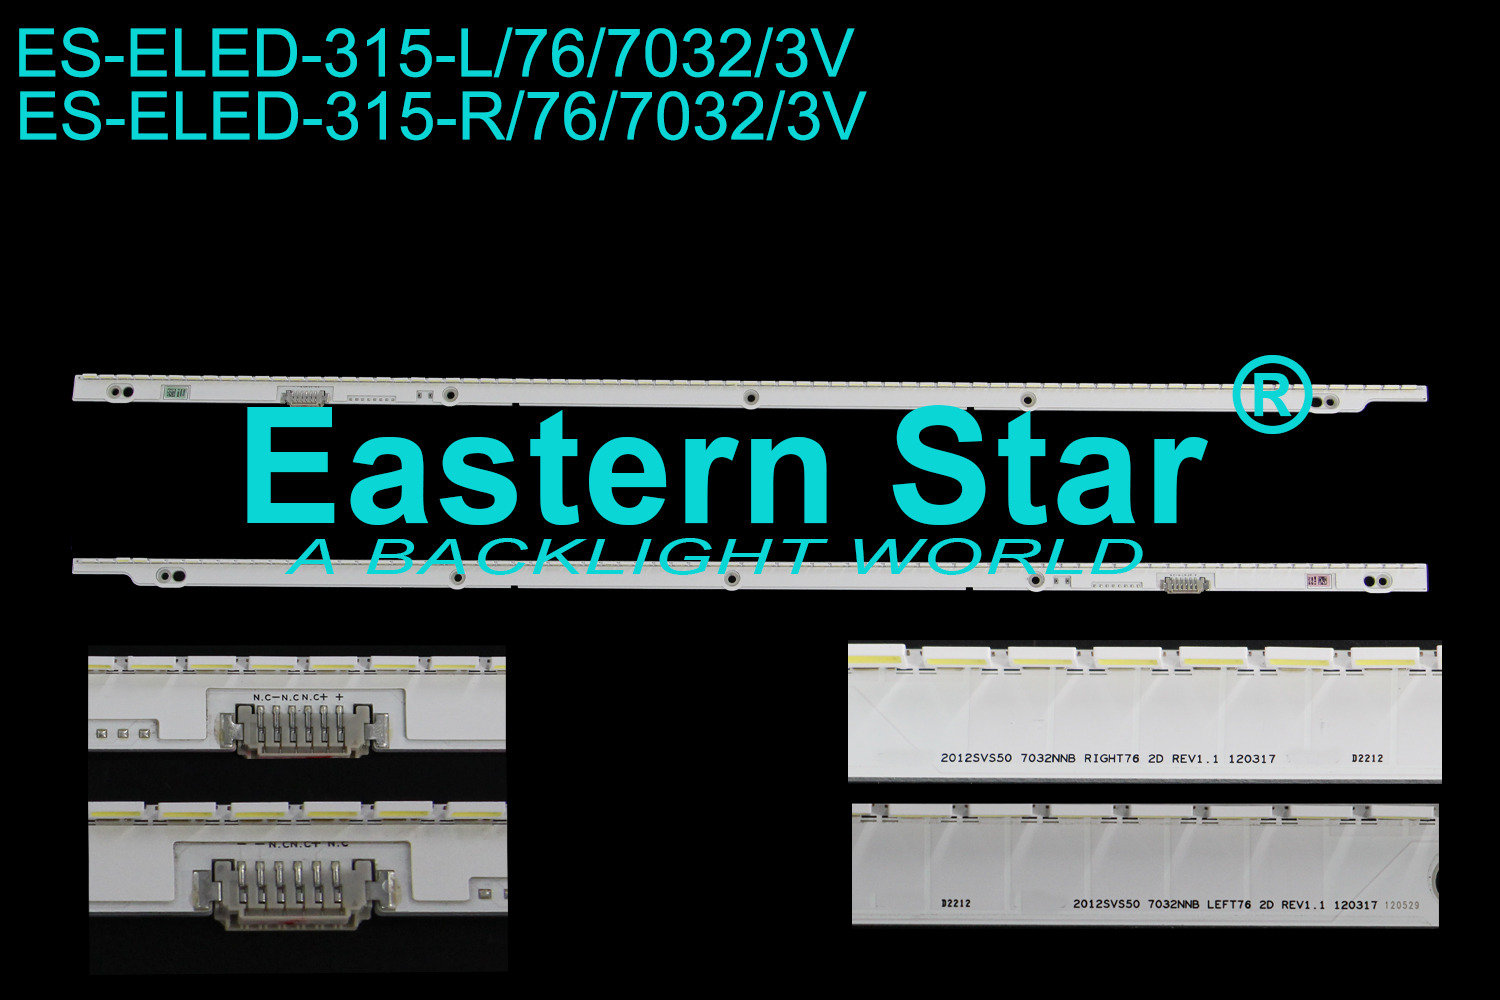 ES-ELED-315 ELED/EDGE TV backlight use for 50'' Samsung ua50es5500 SAMSUNG 2012SVS50 7032NNB RIGHT76 2D REV1.1 120317 LED STRIPS(2)